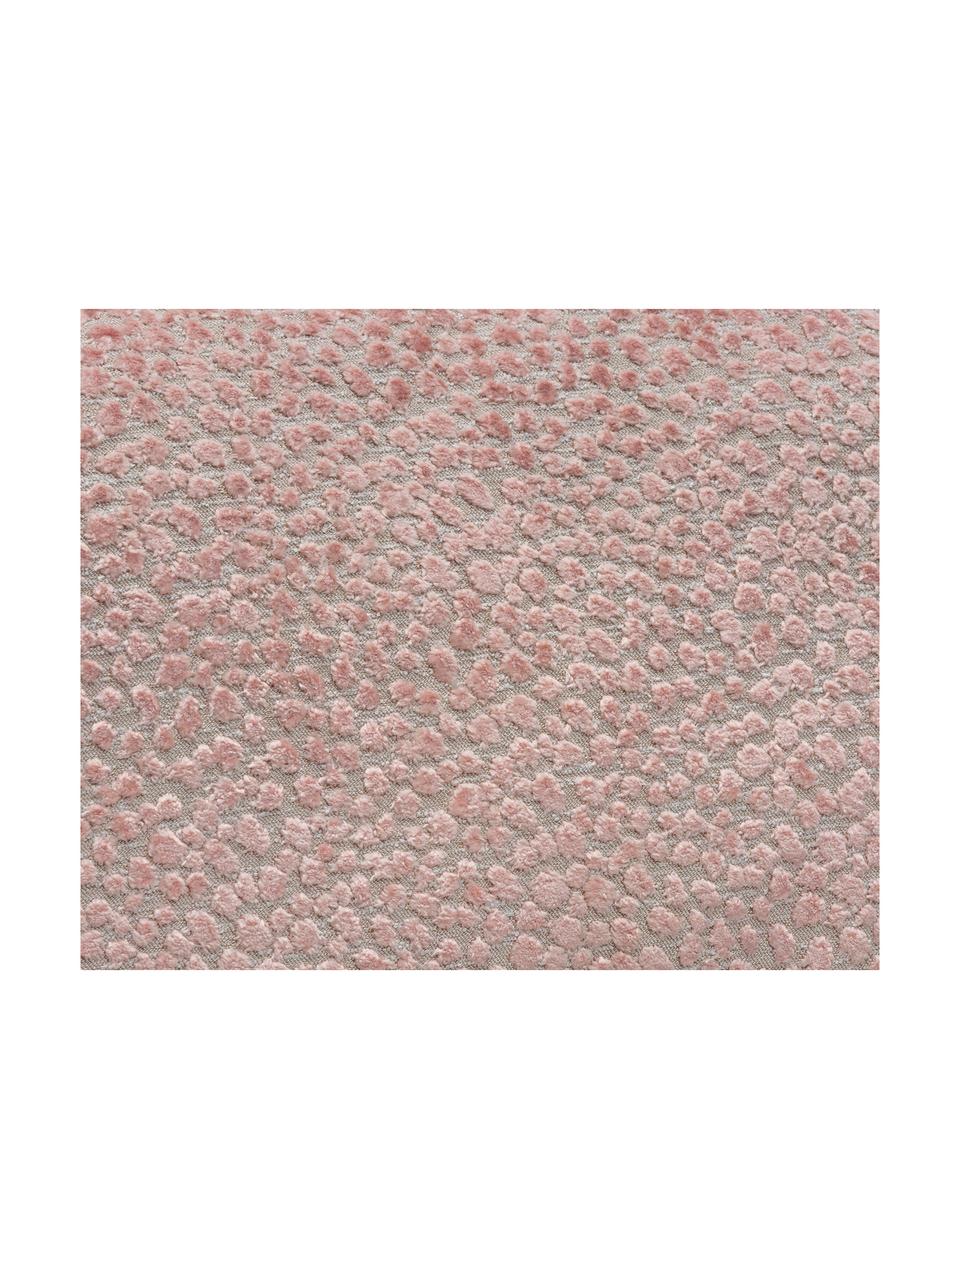 Kussenhoes Scatter, 60% polyester, 40% viscose, Perzikkleurig, 40 x 60 cm